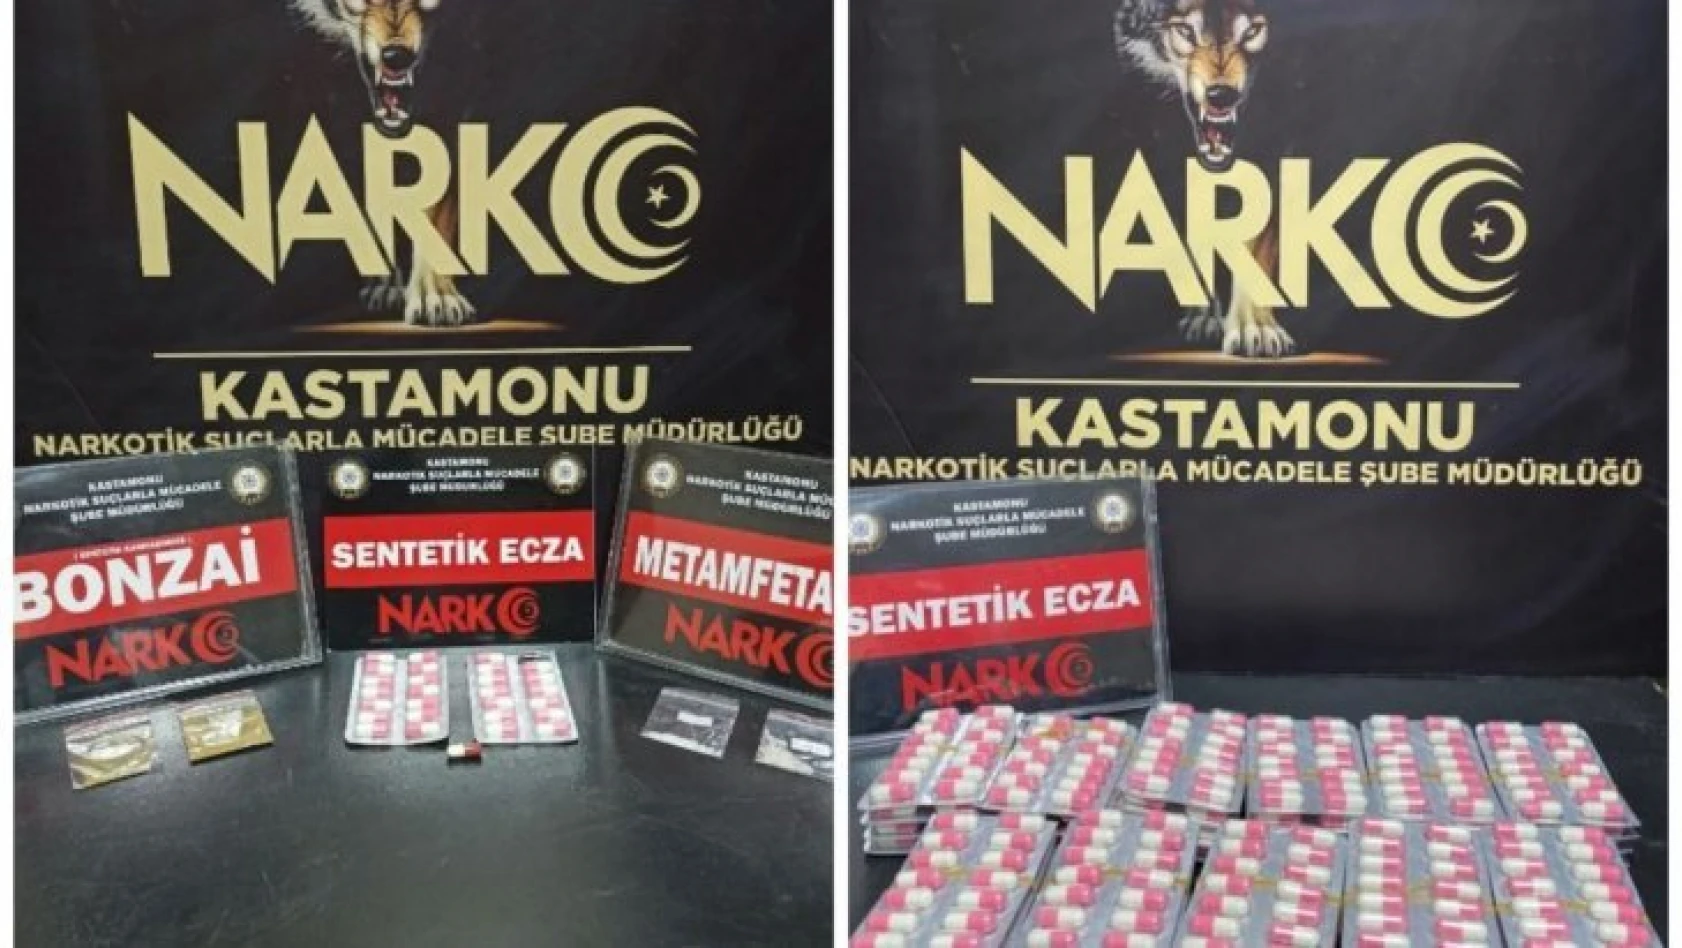 Kastamonu'da uyuşturucu operasyonu: 4 gözaltı!